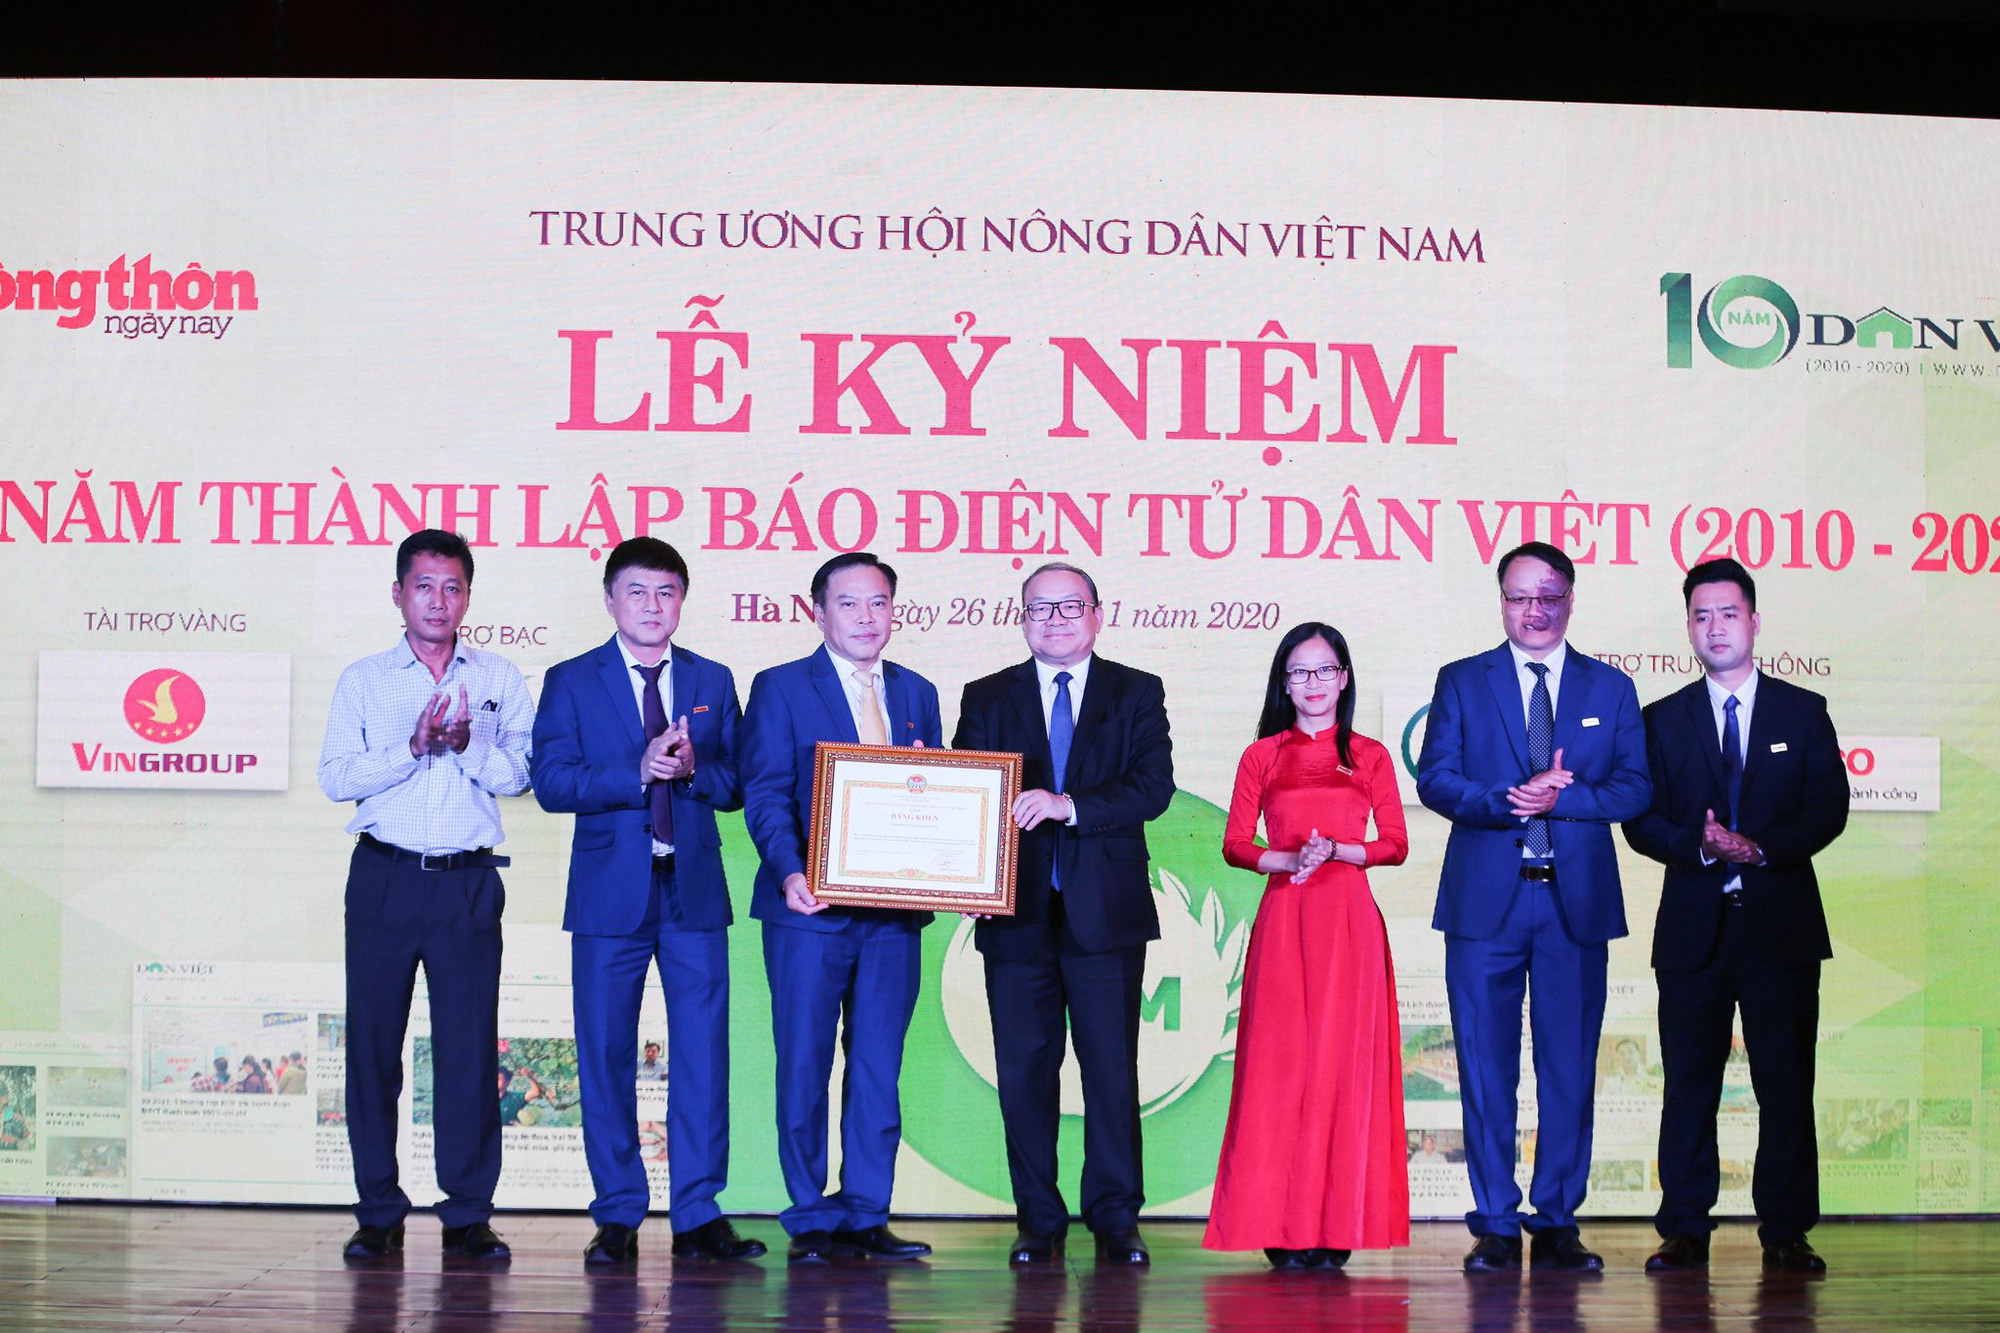 Chủ tịch Hội NDVN Thào Xuân Sùng: Báo điện tử Dân Việt trưởng thành không ngừng, xứng đáng với nông dân cả nước - Ảnh 3.